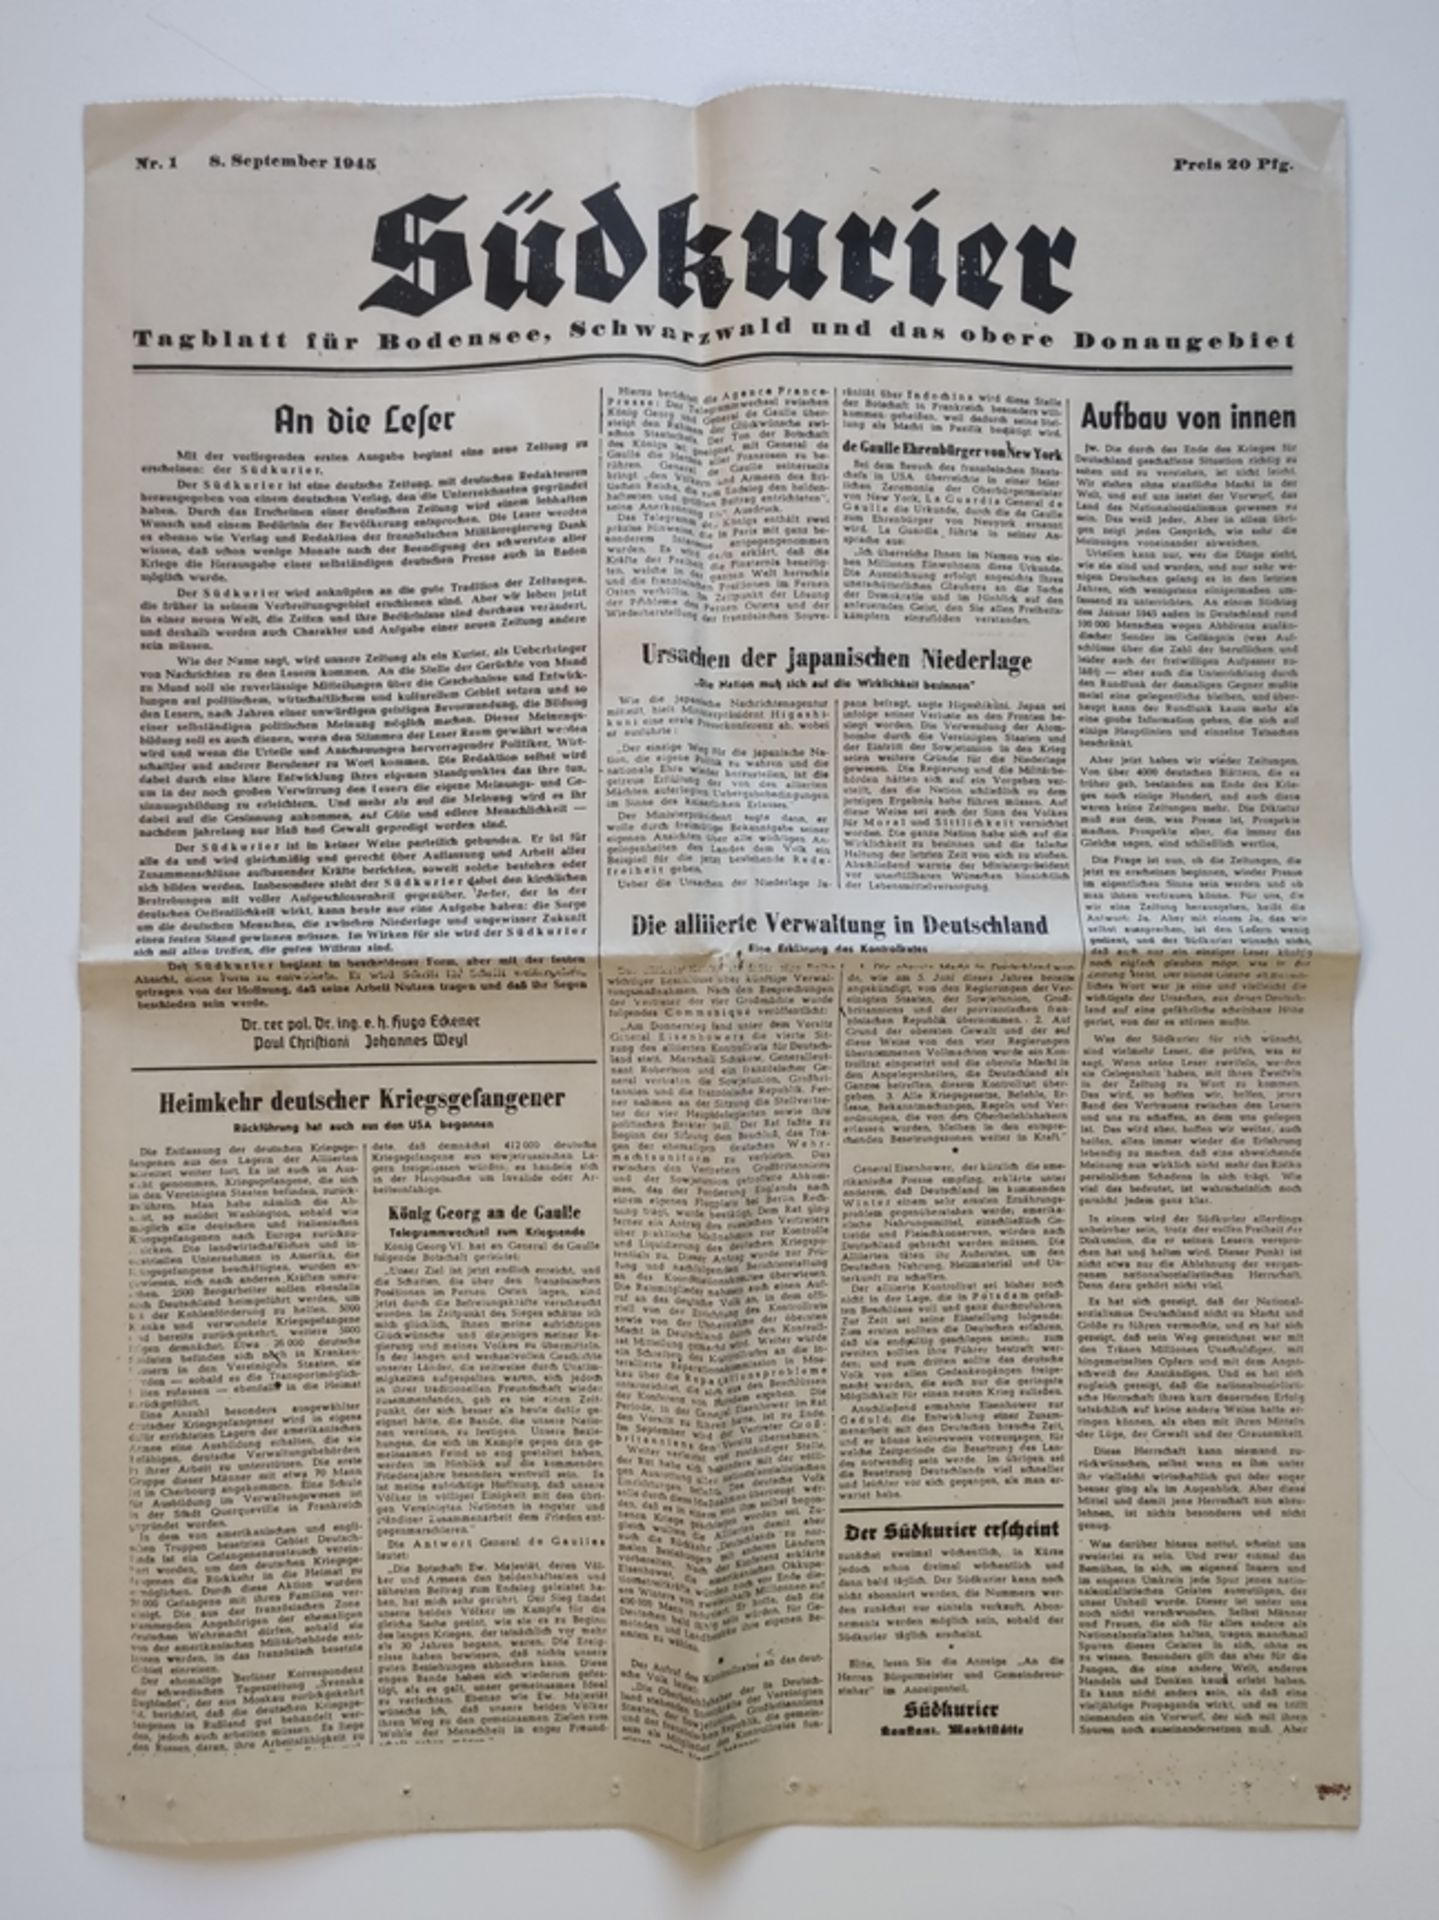 First issue of the Südkurier "Südkurier. Tagblatt für Bodensee, Schwarzwald und das obere Donaugebi